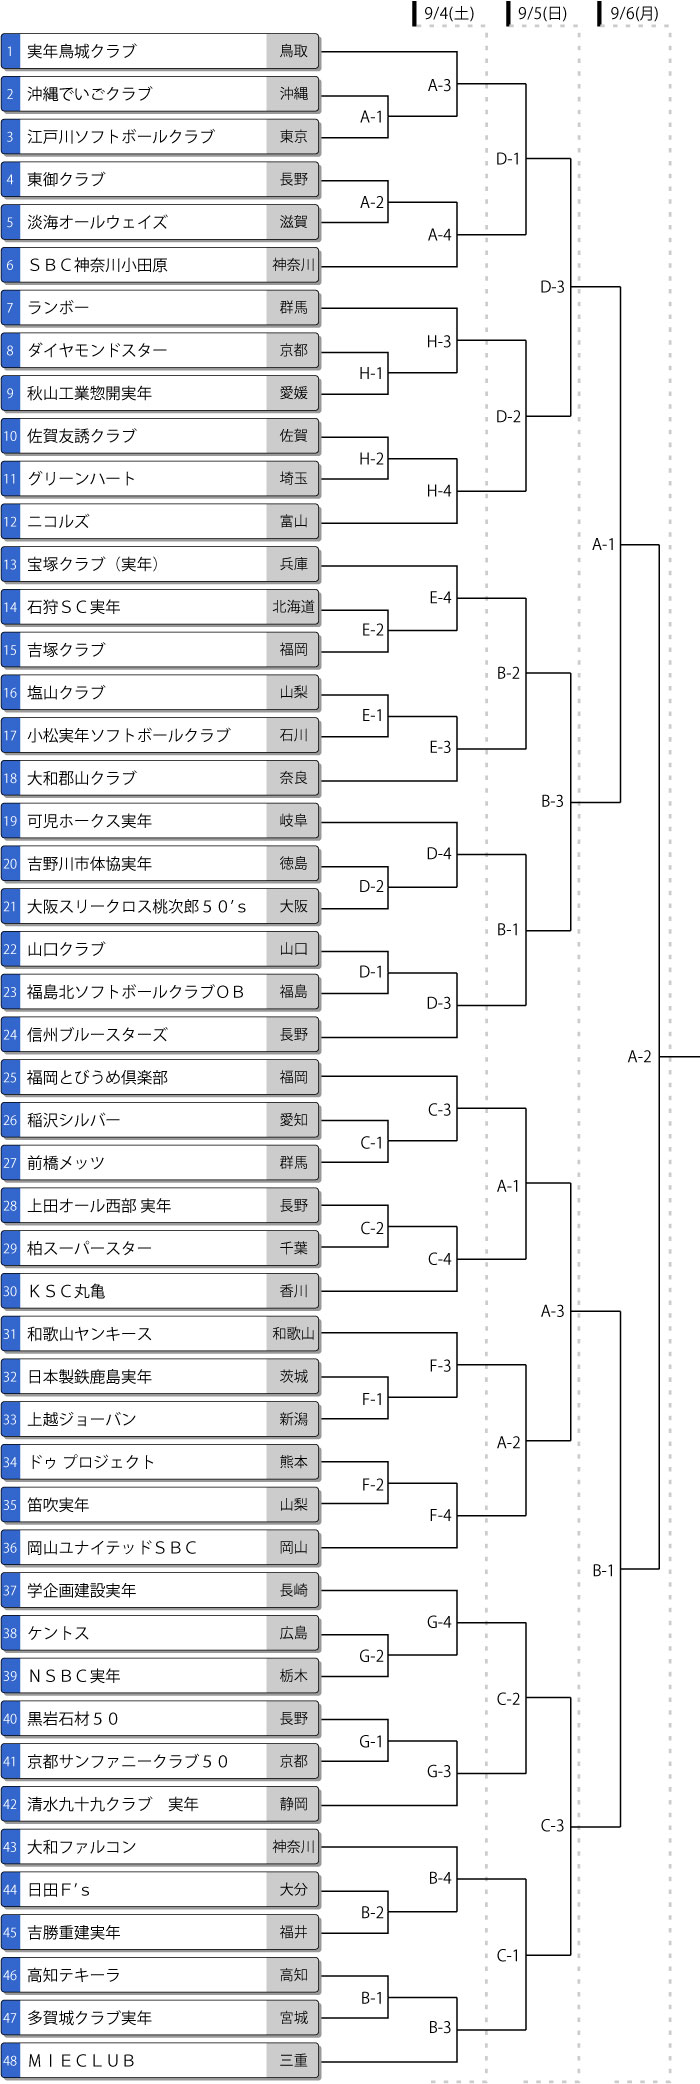 第30回全日本実年大会トーナメント表